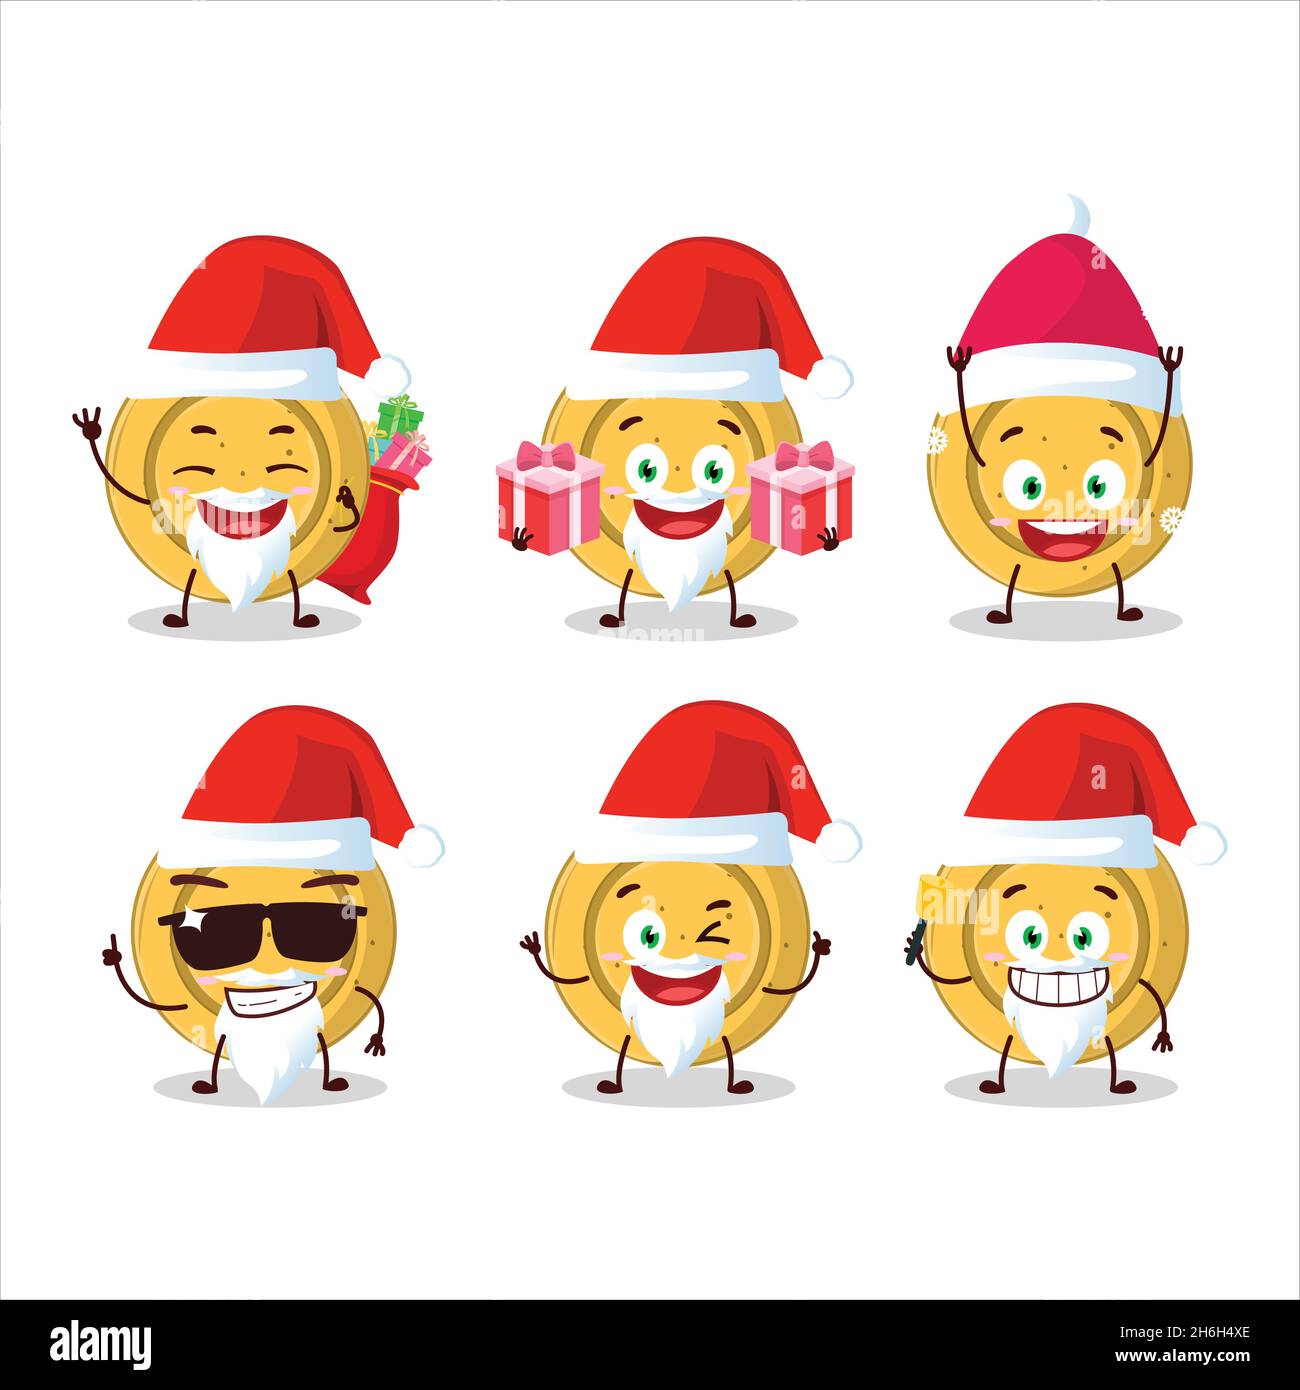 Emoticones De Santa Claus Con Carácter De Dibujos Animados De Círculos De Caramelos De Dalgona